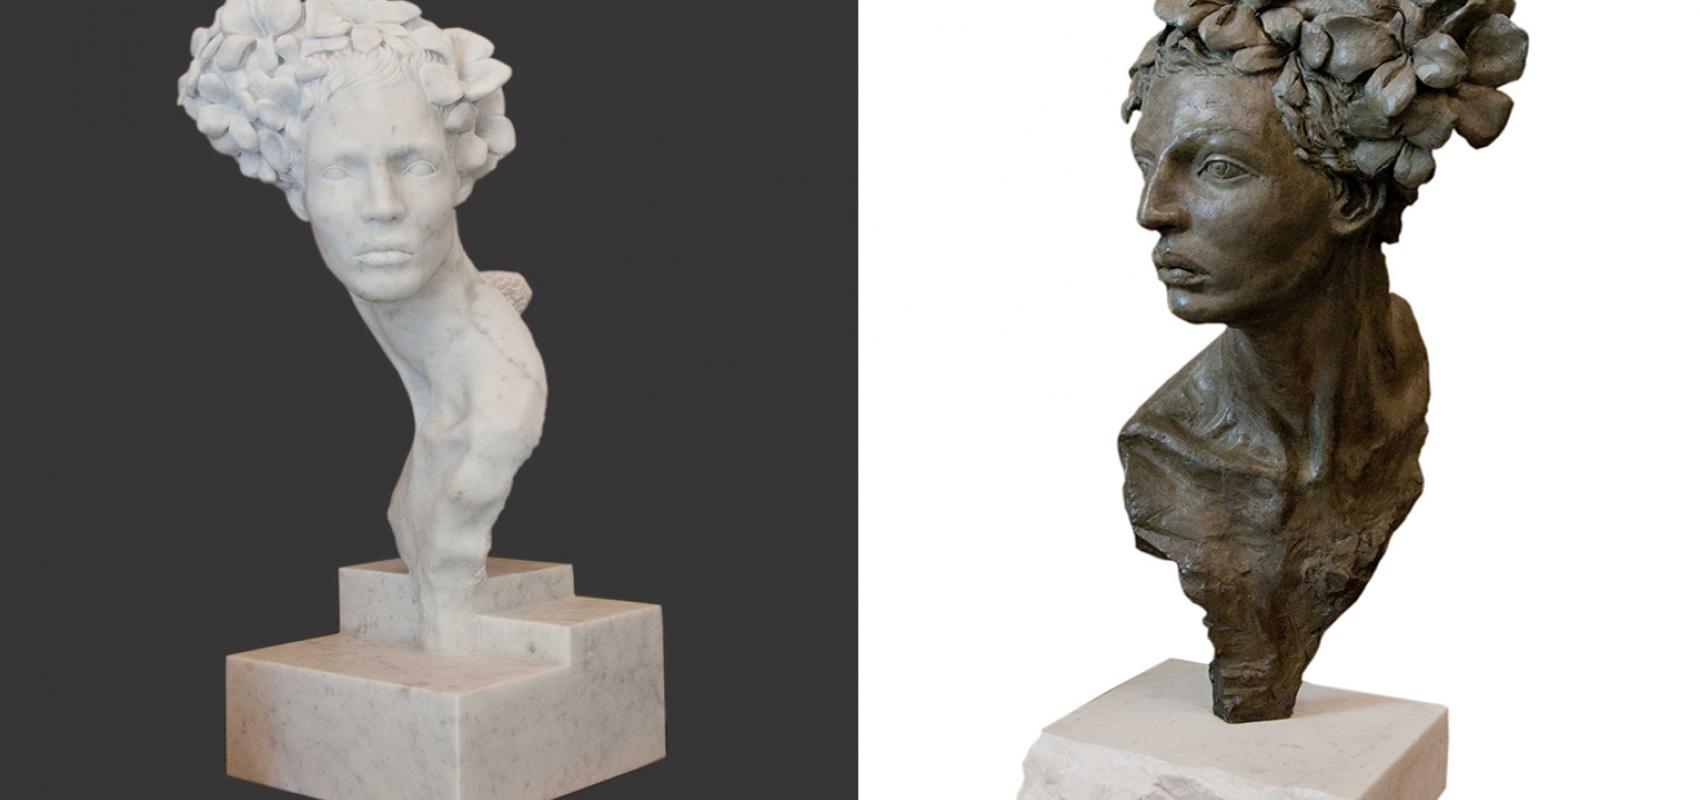 Escultura "Primavera" tallada en mármol y en bronce, del catálogo de Máxima Estudio-Taller.